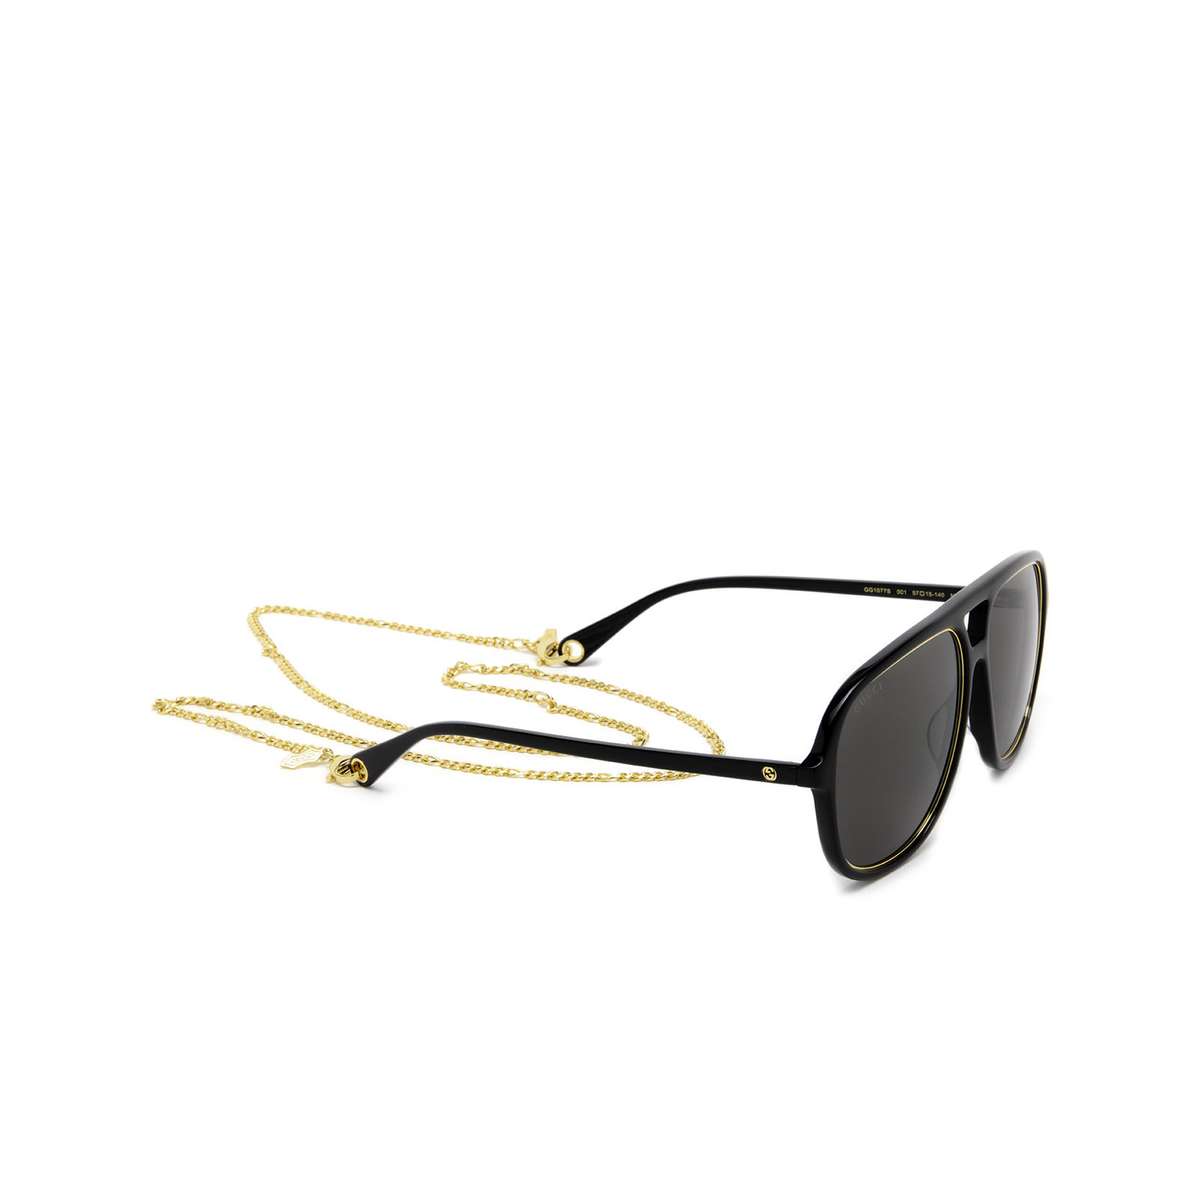 Gucci® Aviator Sunglasses: GG1077S color Black 001 - three-quarters view.